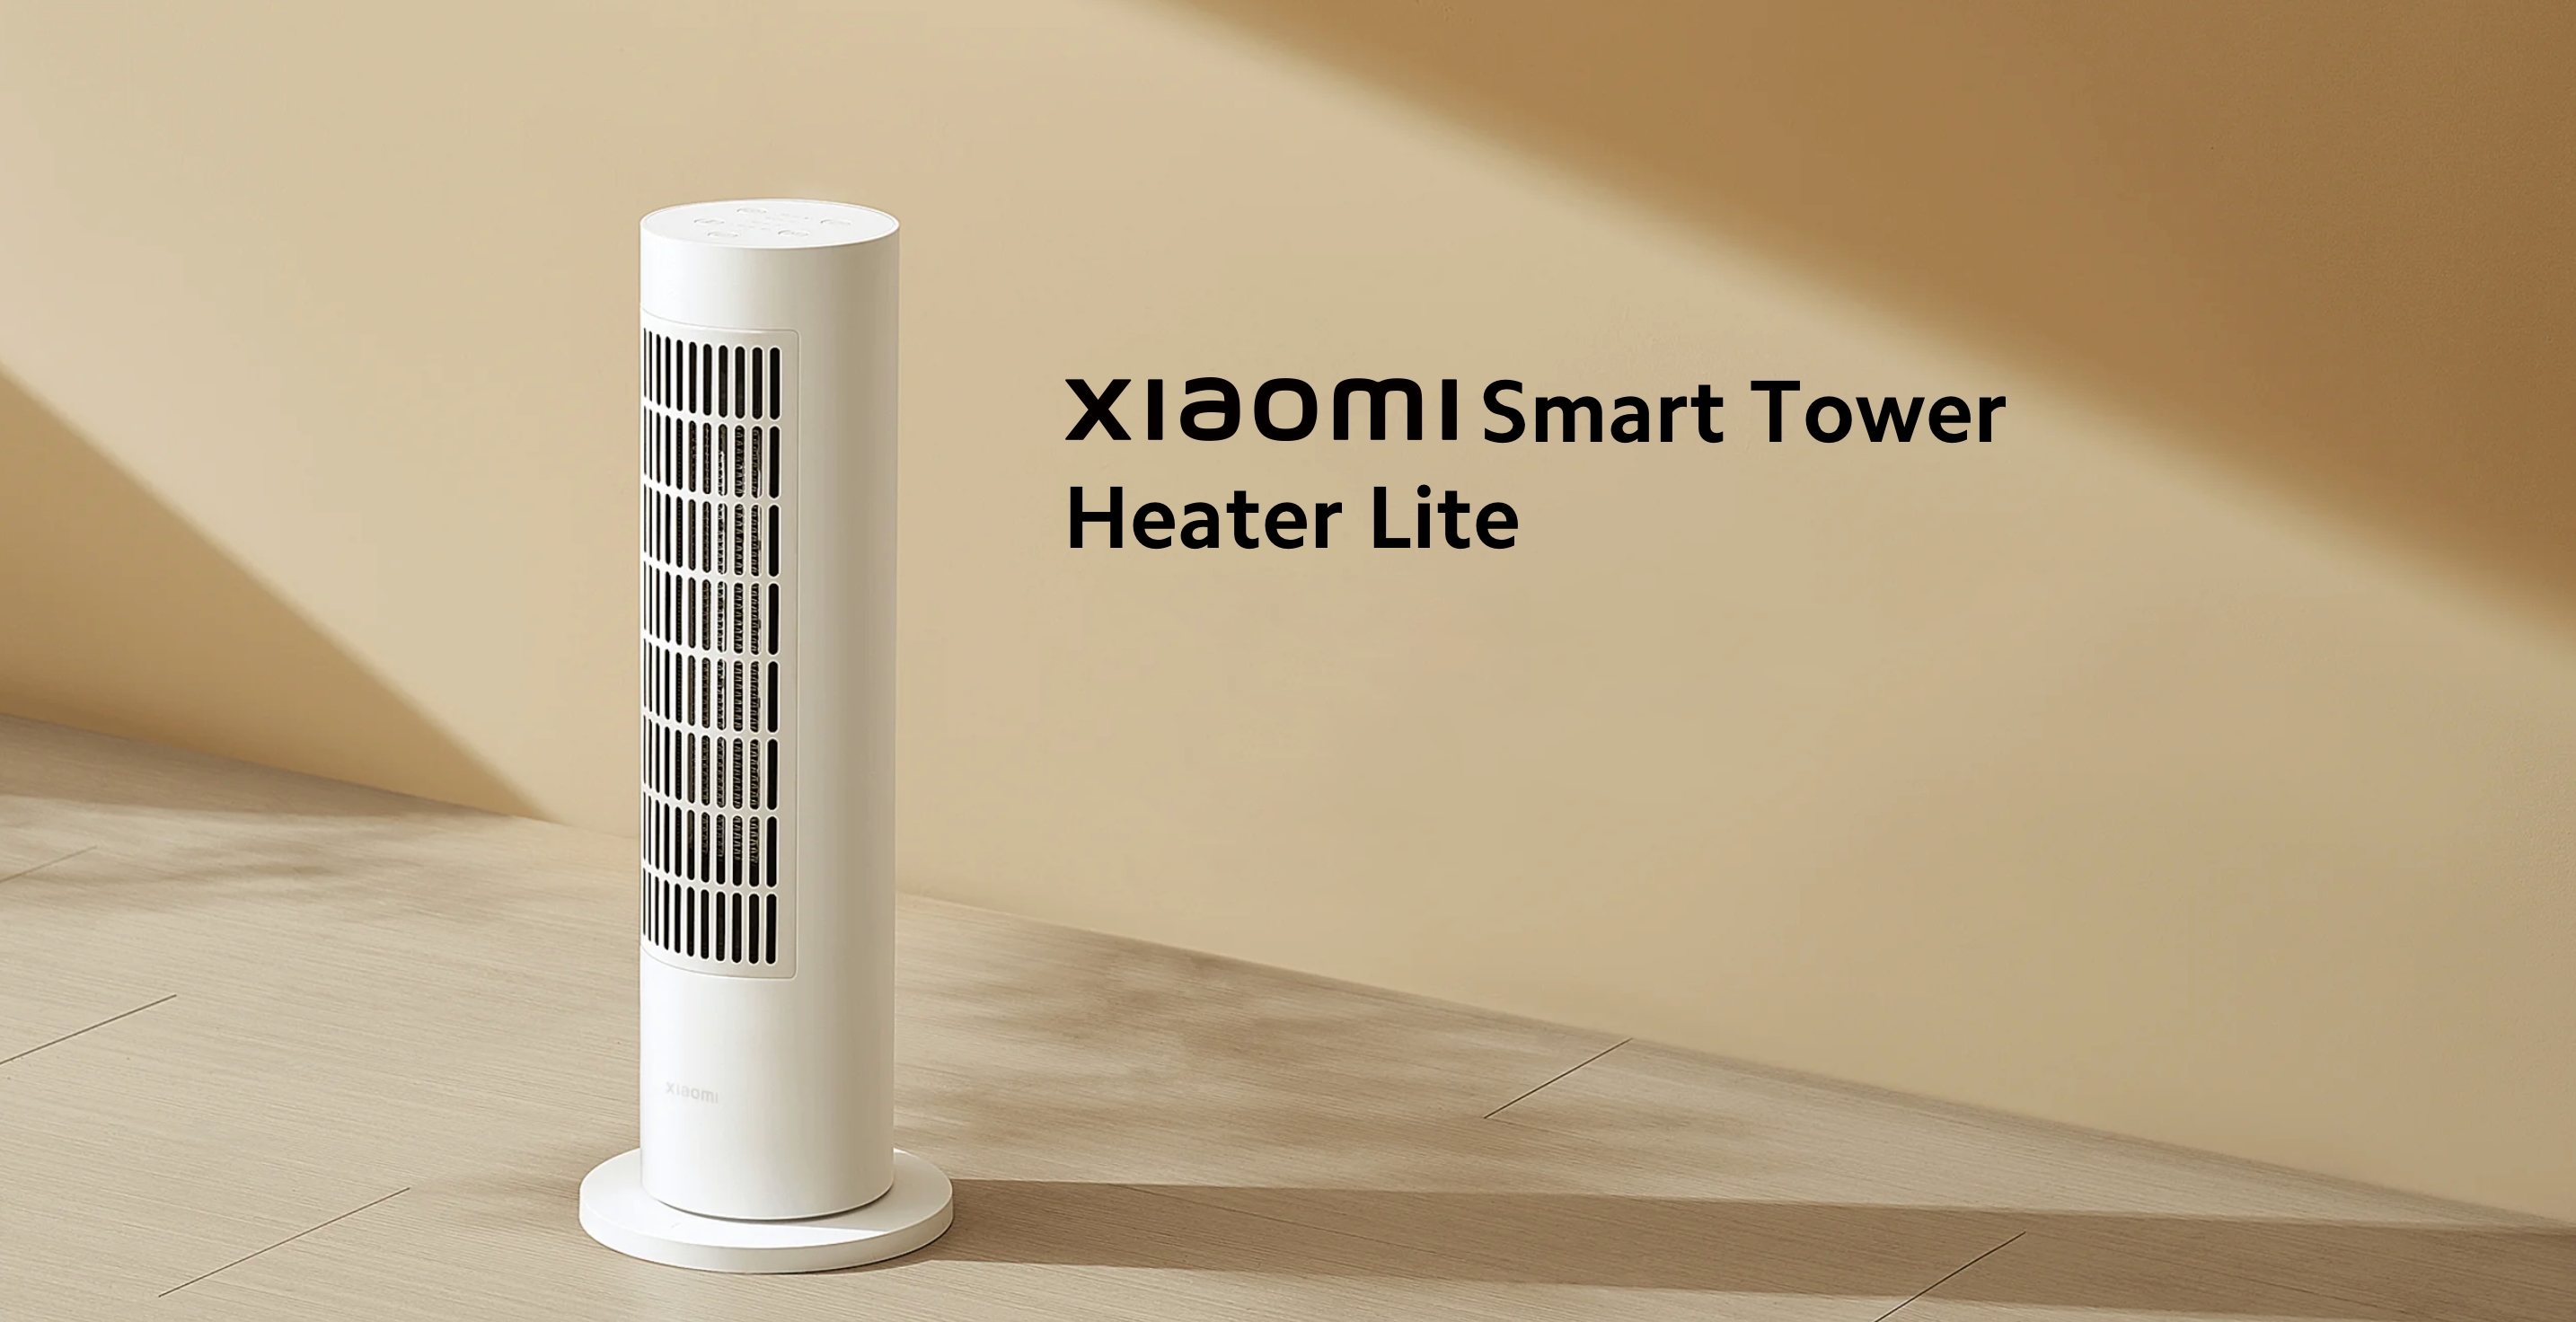 Xiaomi har introdusert en smart varmeovn med innebygd temperatursensor og en pris fra 99 euro i Europa.